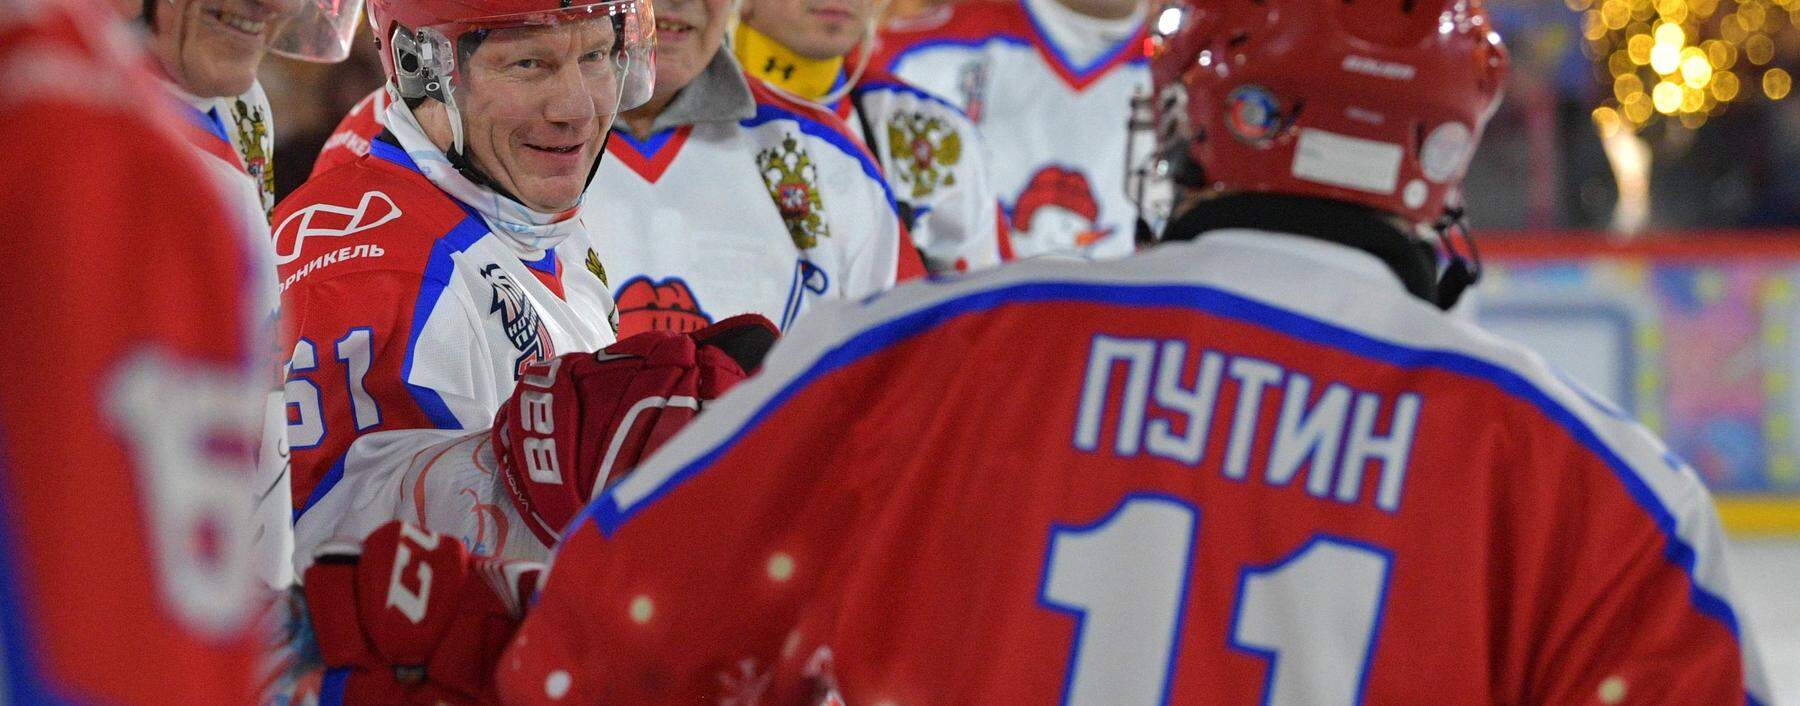 Wladimir Potanin - zweiter von links bei einem Eishockey-Match mit Putin.